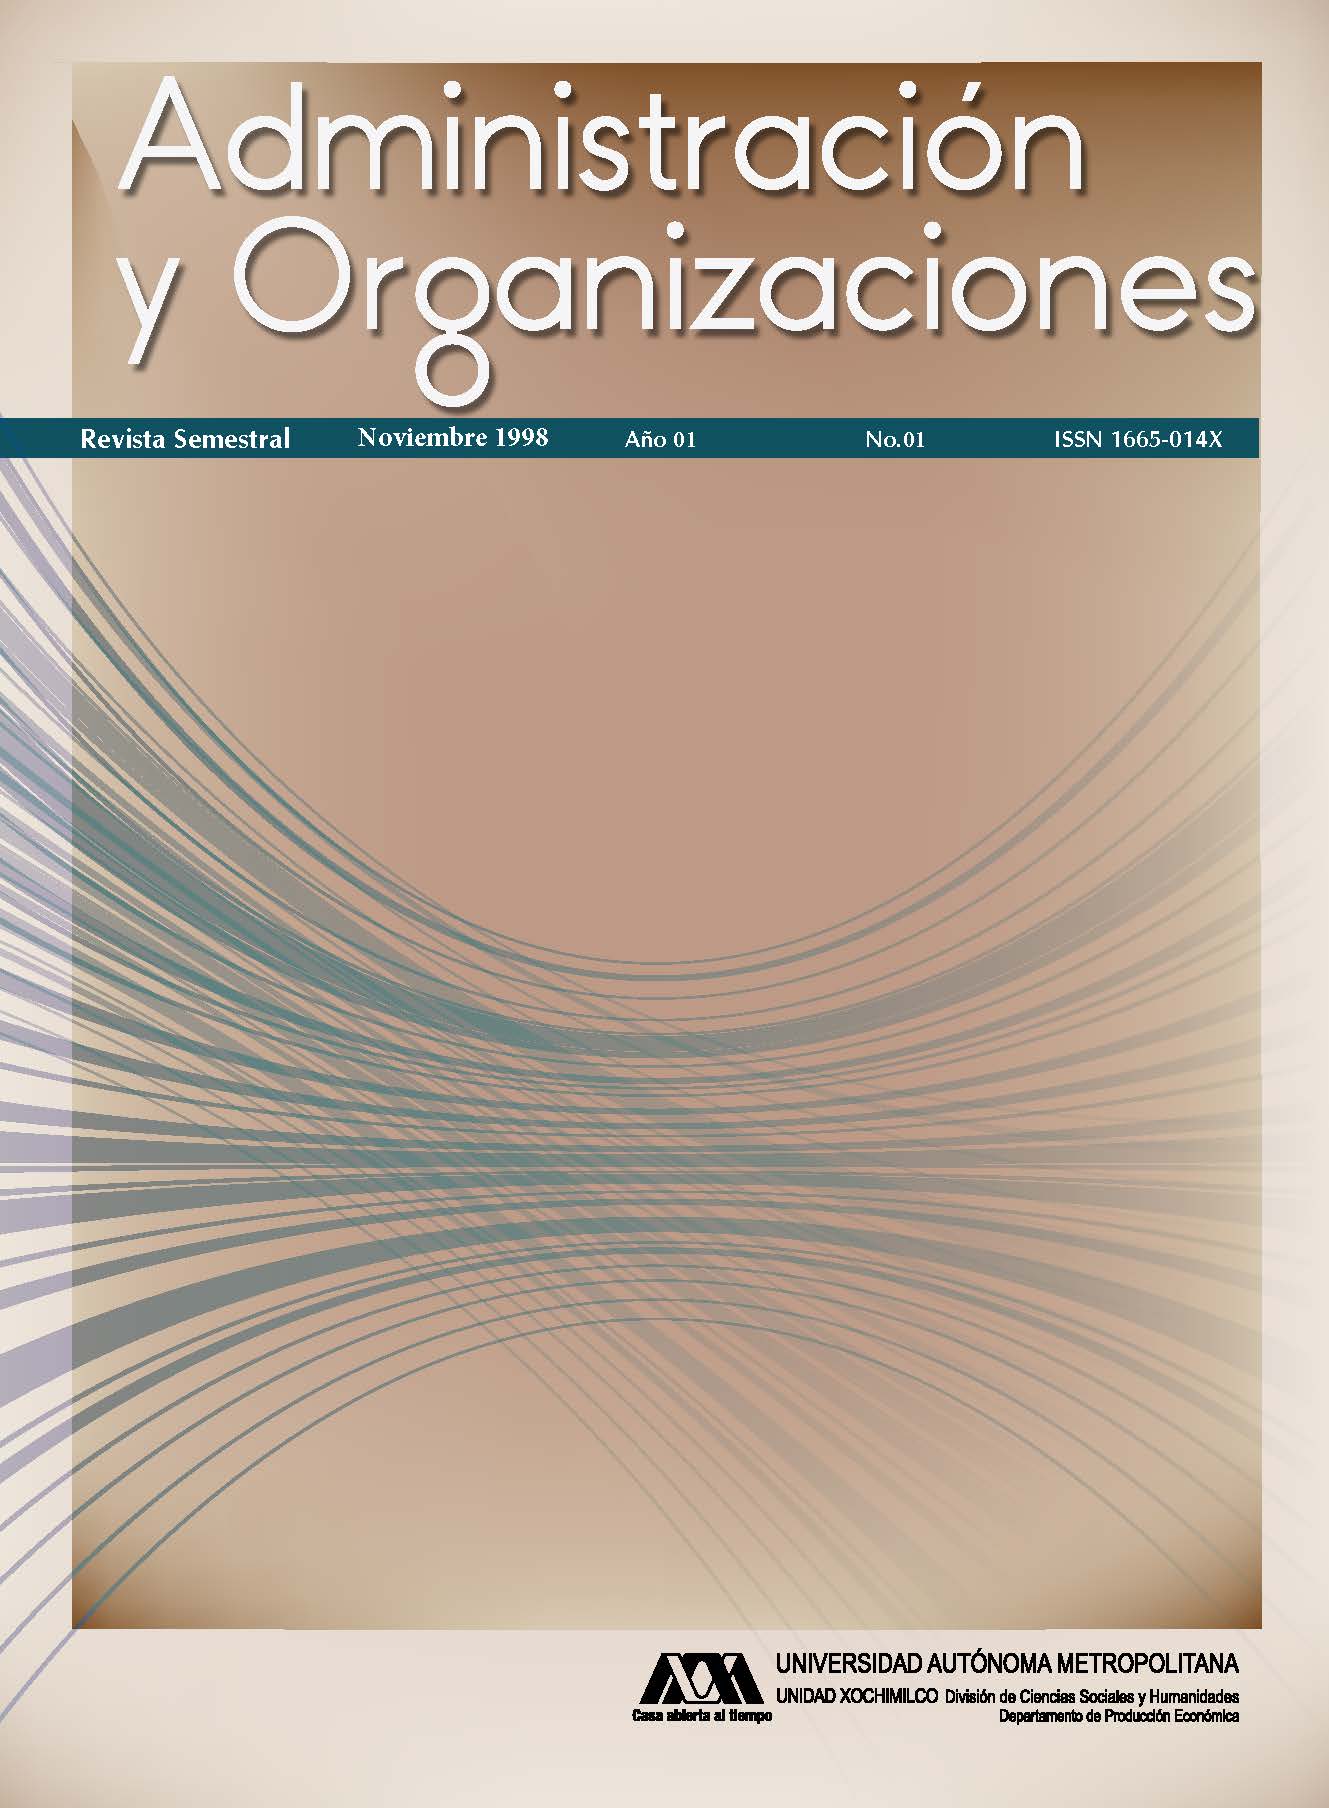 					Ver Vol. 1 Núm. 01 (1): Administración y Organizaciones
				